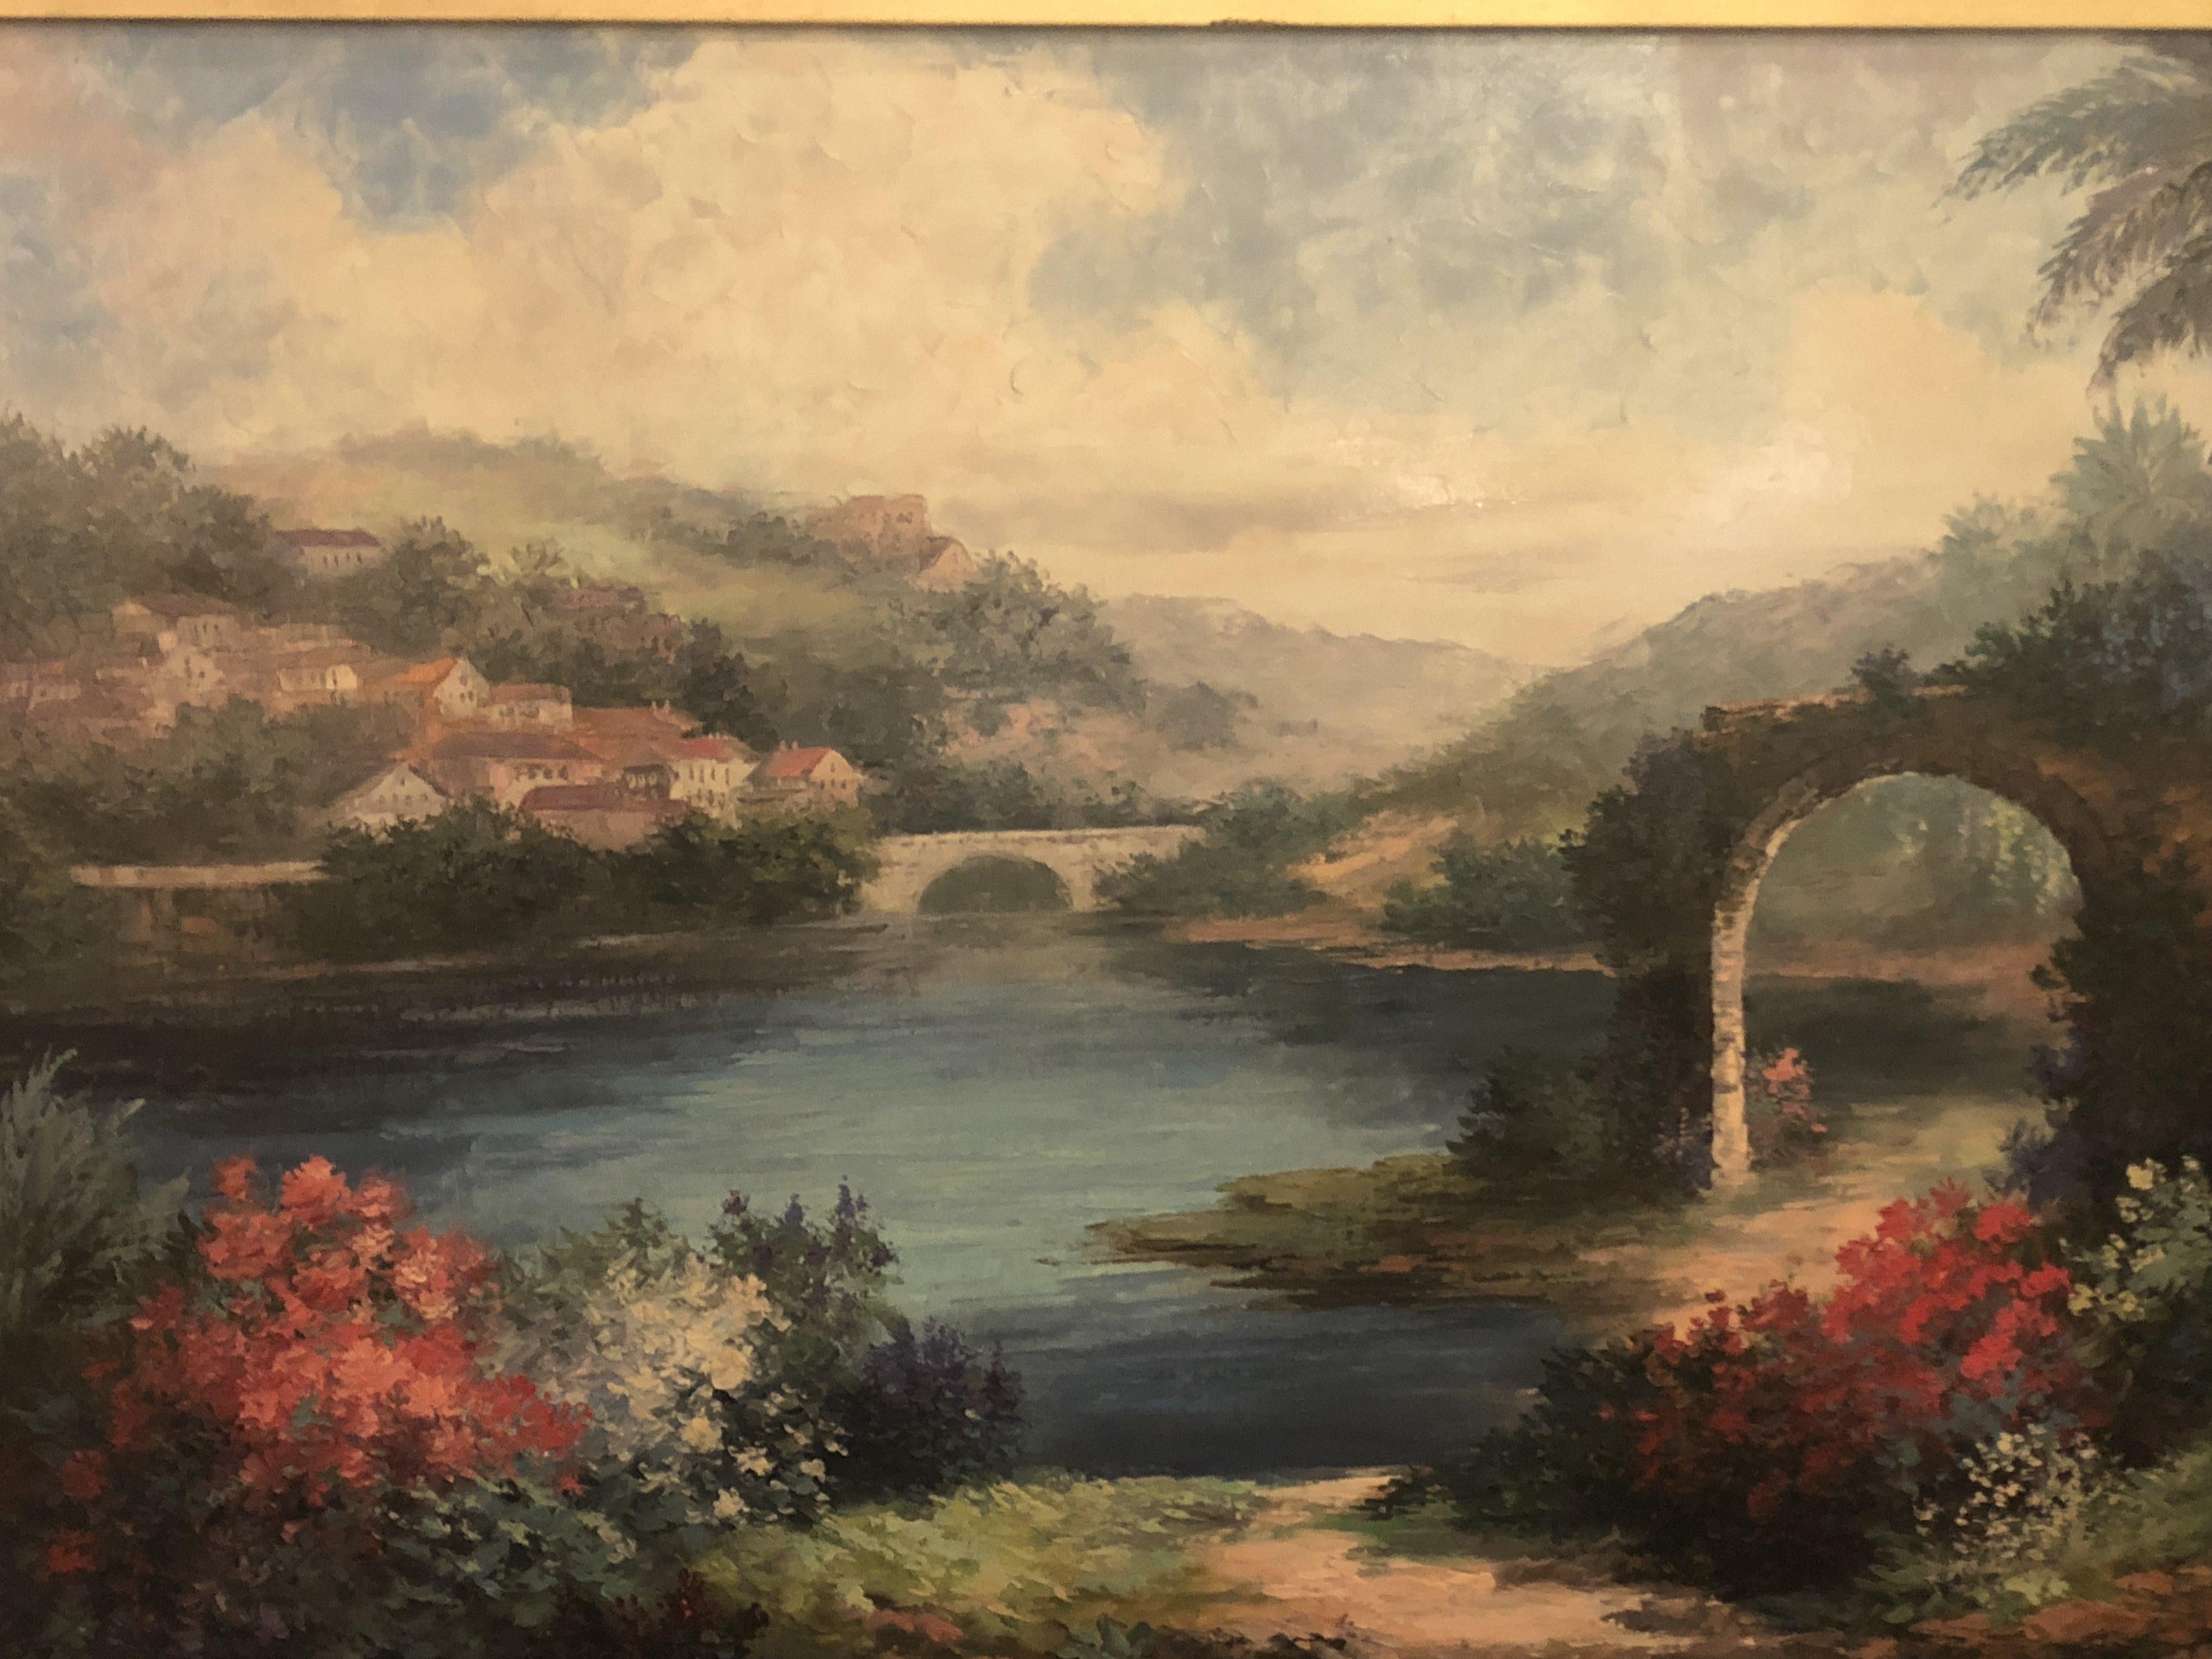 Americana Landschaft, Öl auf Leinwand, Gemälde, signiert P. Paul, gerahmt (Braun), Landscape Painting, von P.Paul